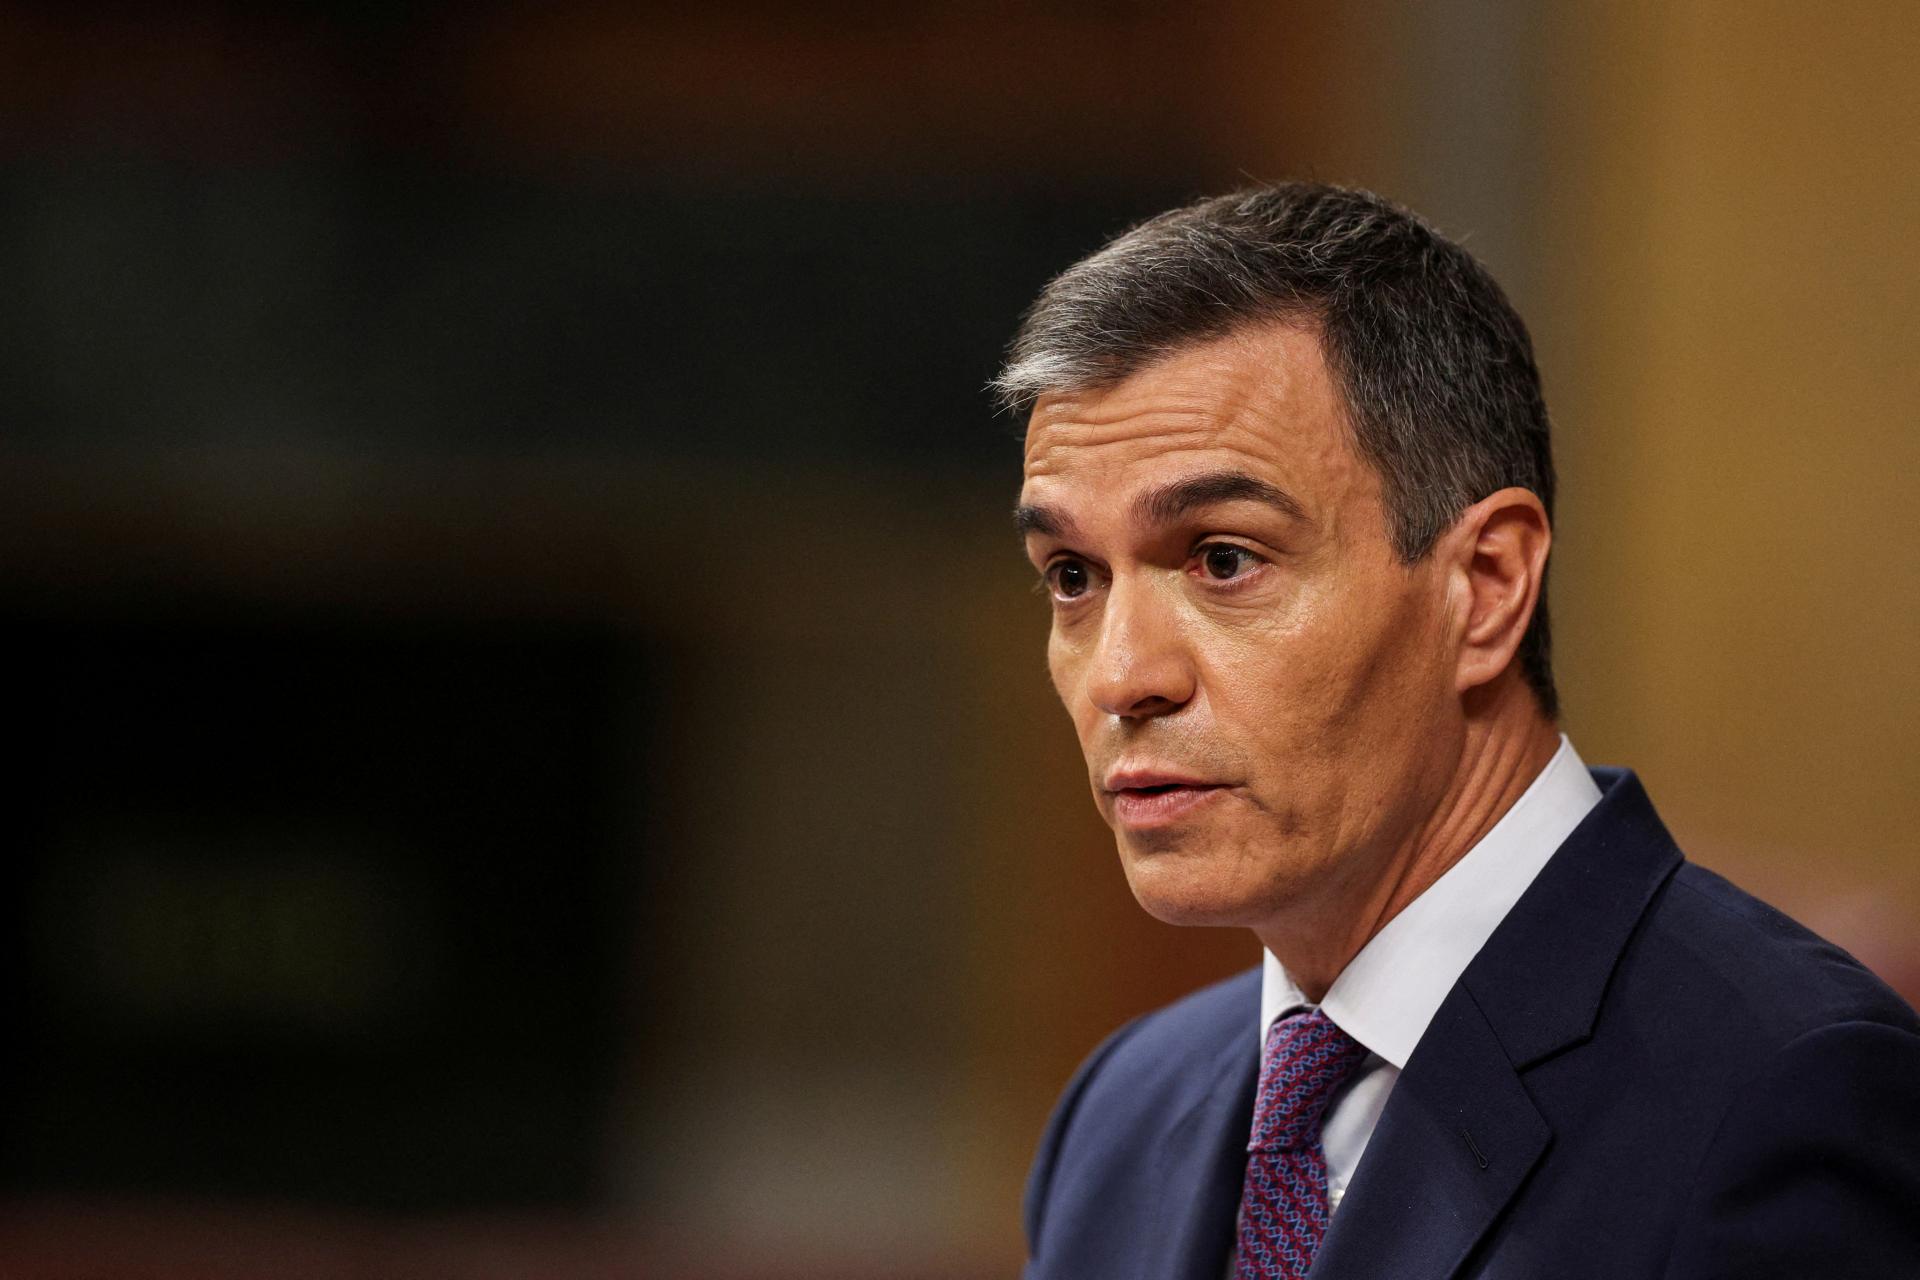 Španielska vláda predstavila opatrenia na obmedzenie šírenia falošných správ, ovplyvňujú politiku